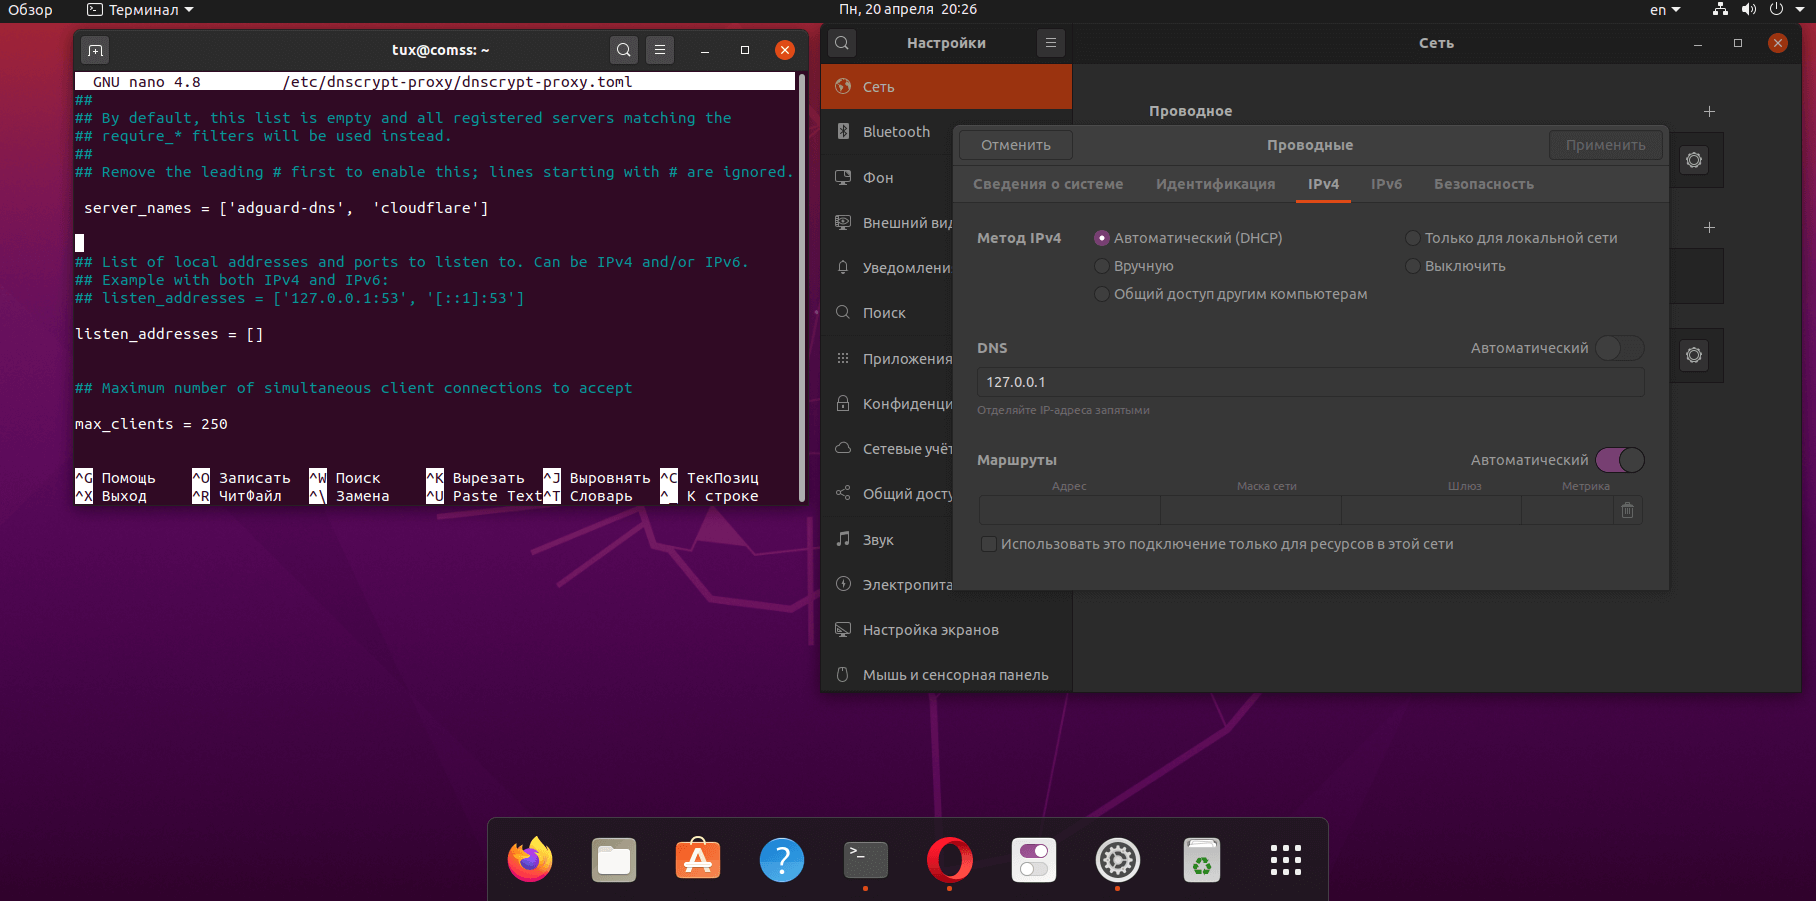 Сетевой карты ubuntu. Операционная система Ubuntu 20.04. Ubuntu настройка сети. Как настроить сеть в убунту сервер. Настройка сети в убунту при установке.